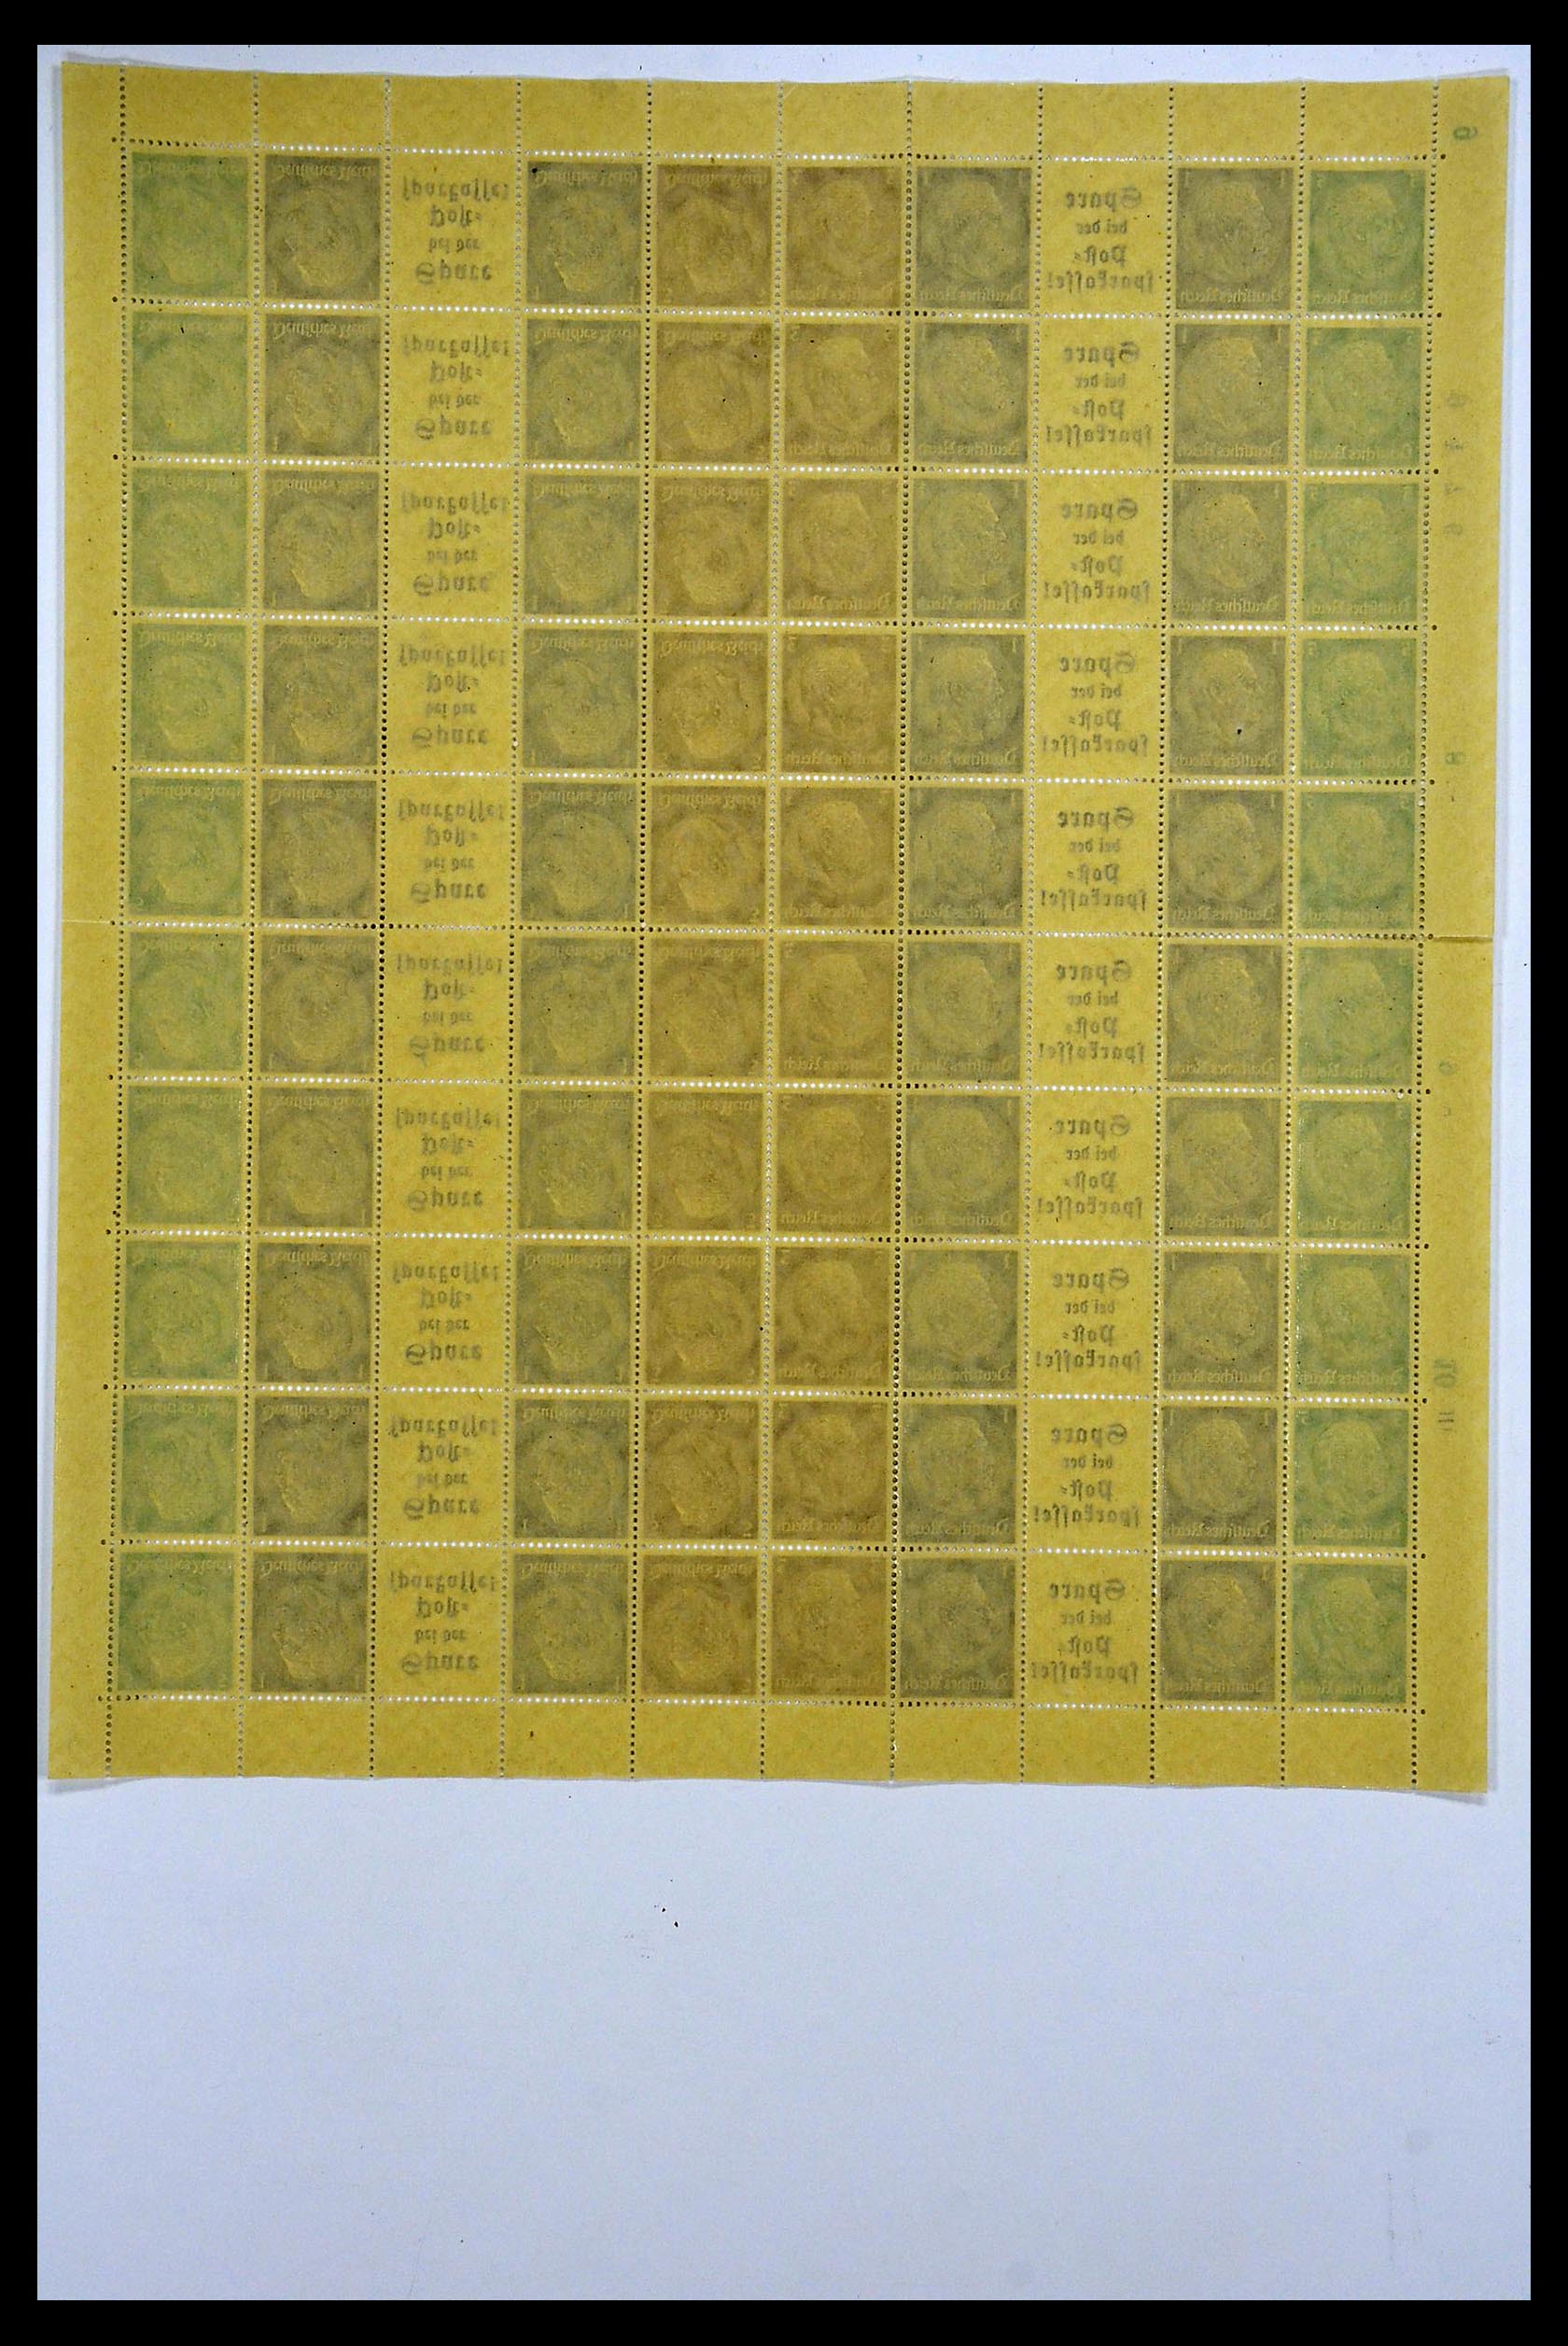 34164 058 - Stamp collection 34164 German Reich Markenheftchenbogen 1933-1942.